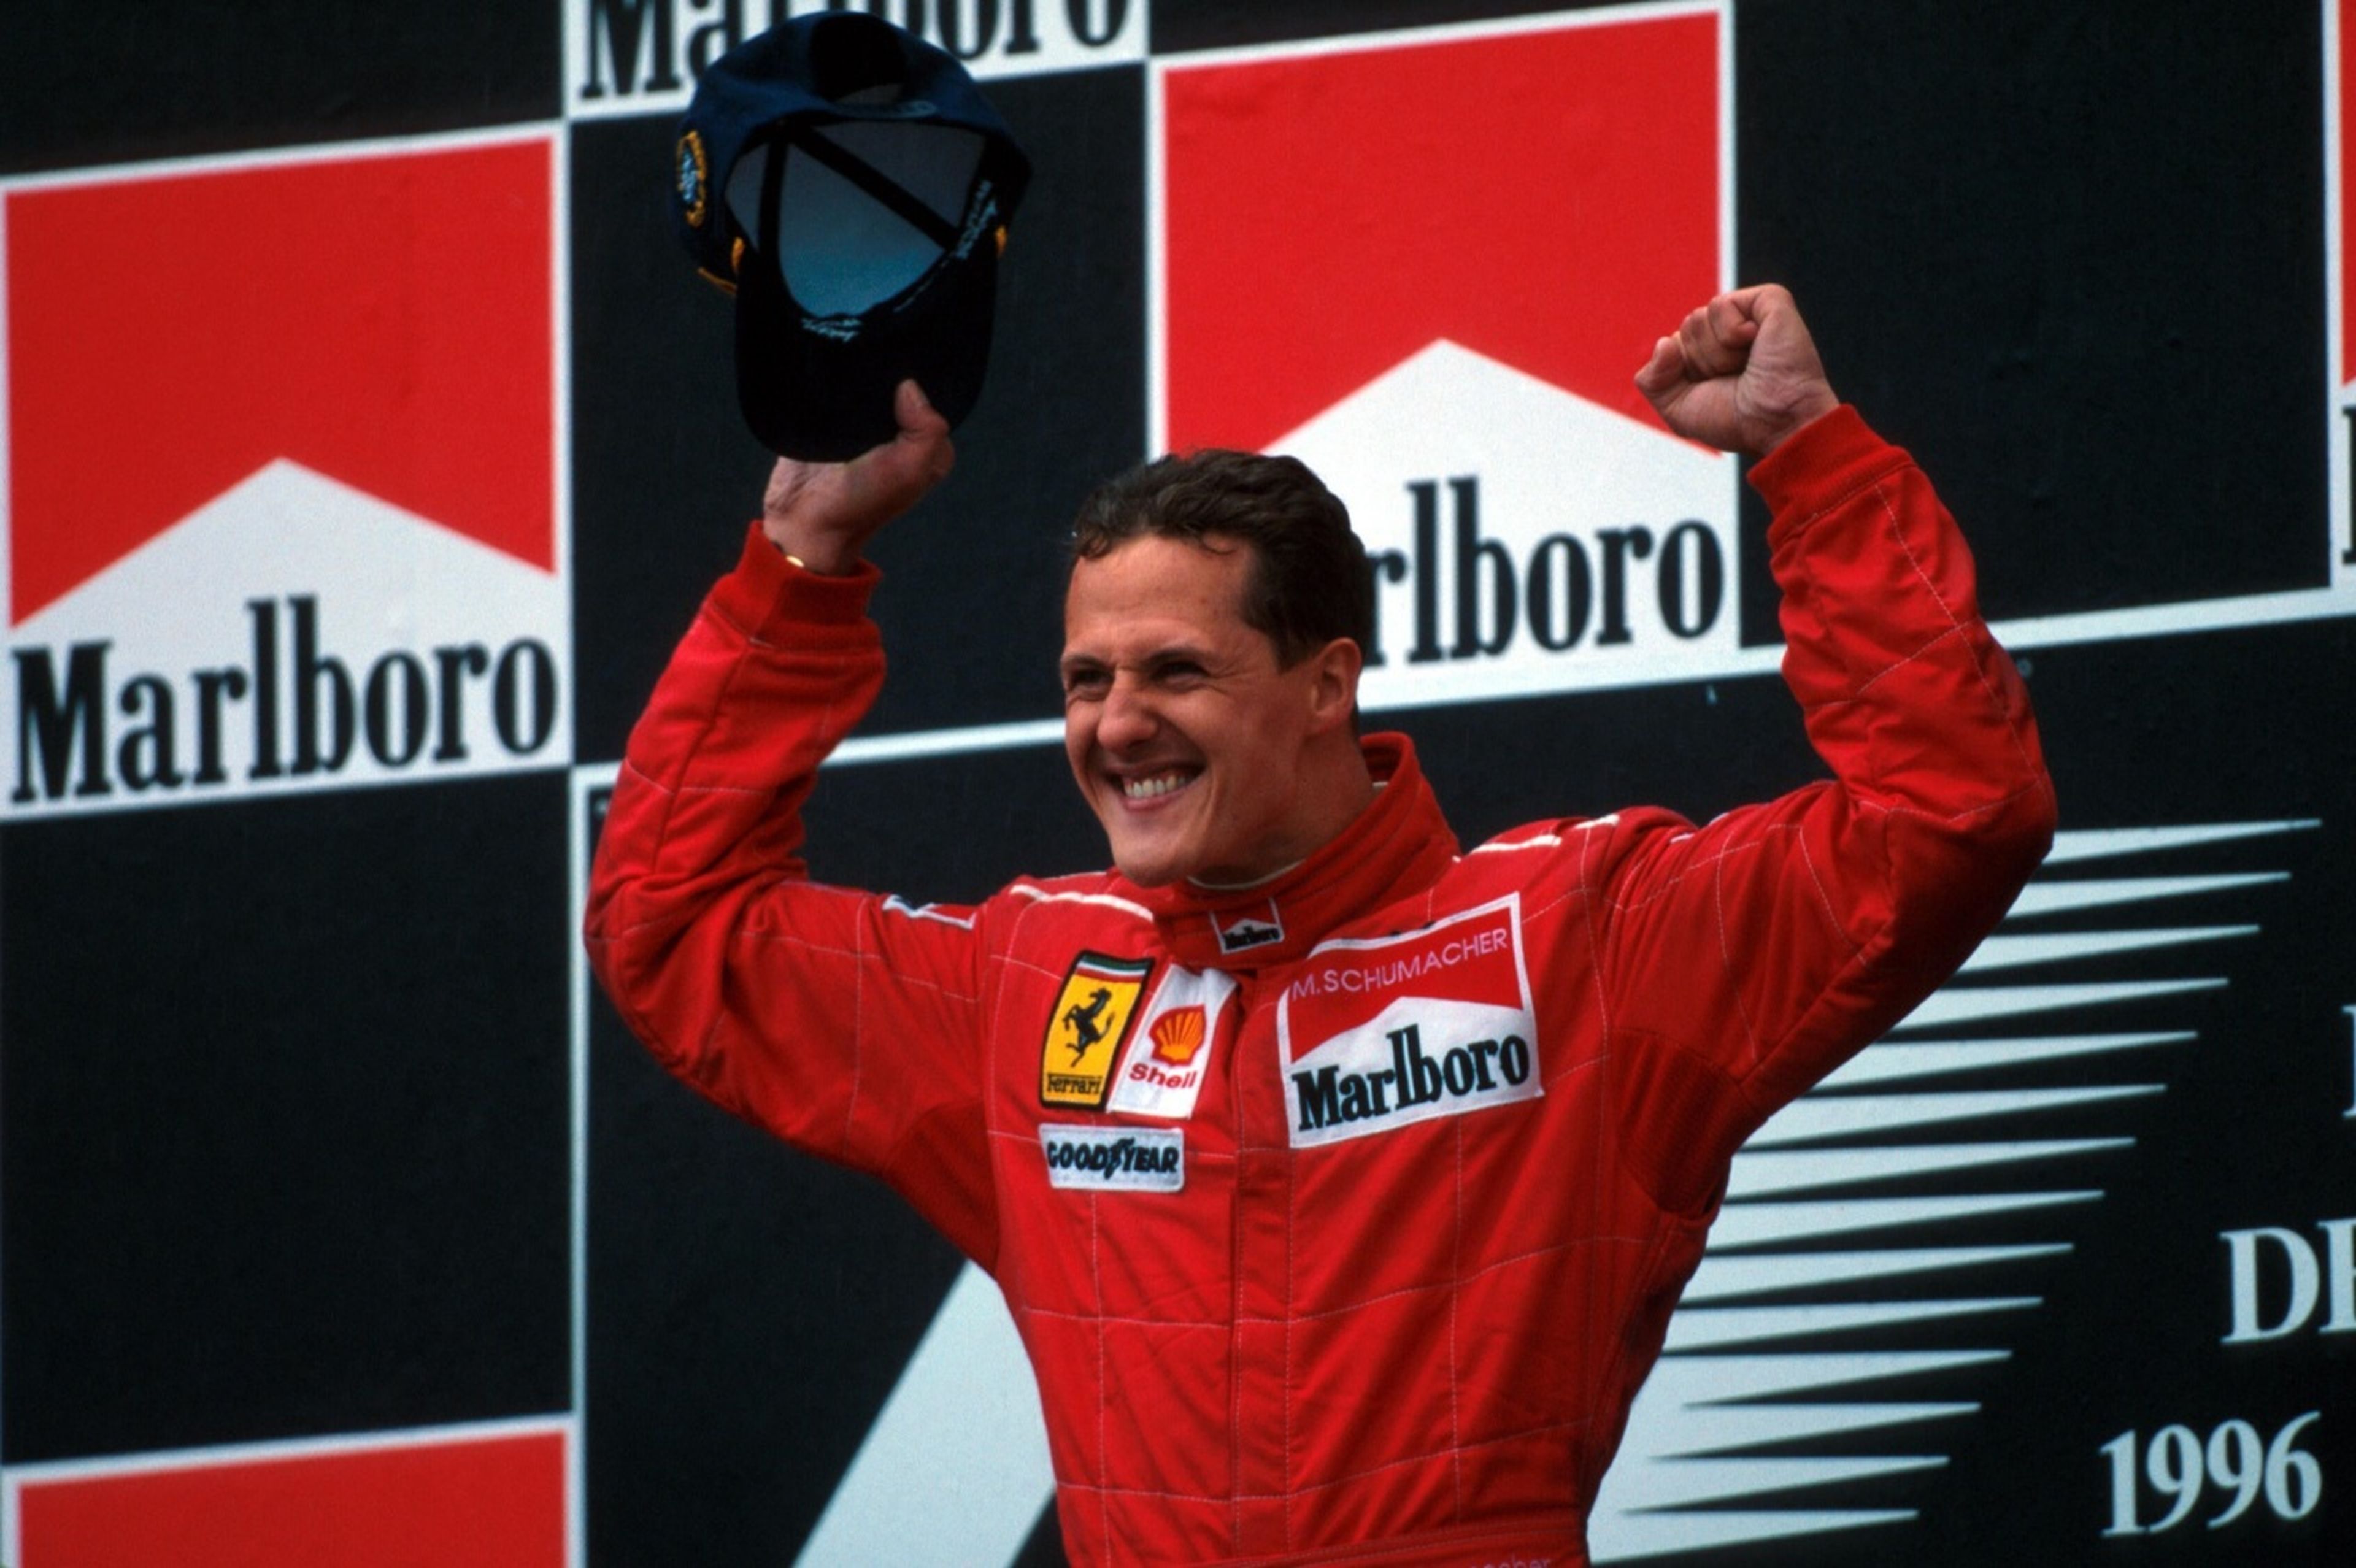 Michael Schumacher podio